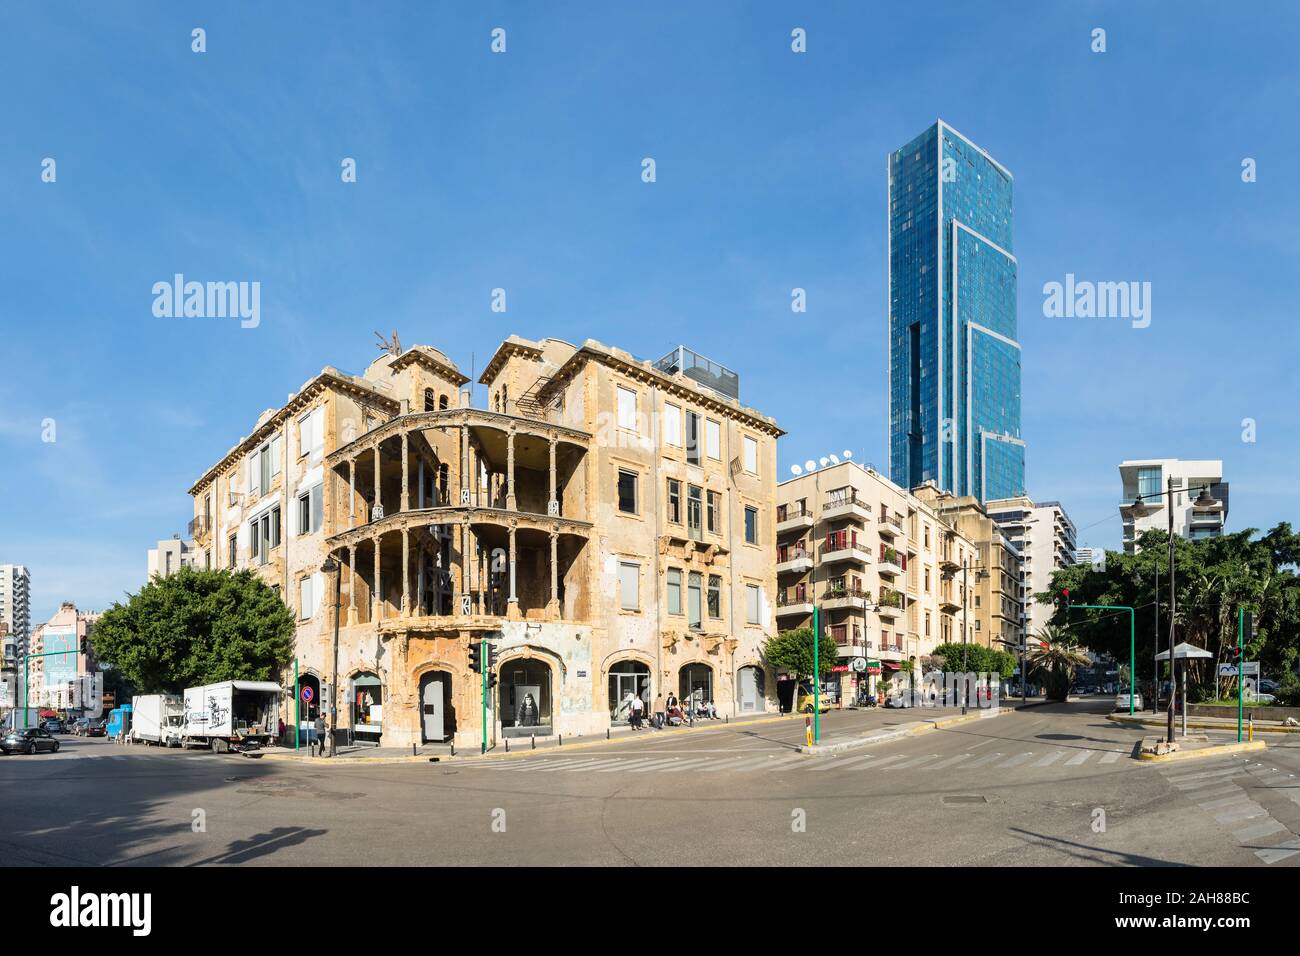 Le vieux quartier historique Beit Beirut ou Barakat, et Sama Beyrouth, plus hauts gratte-ciel moderne au Liban, Sodeco, Achrafieh, Liban Banque D'Images